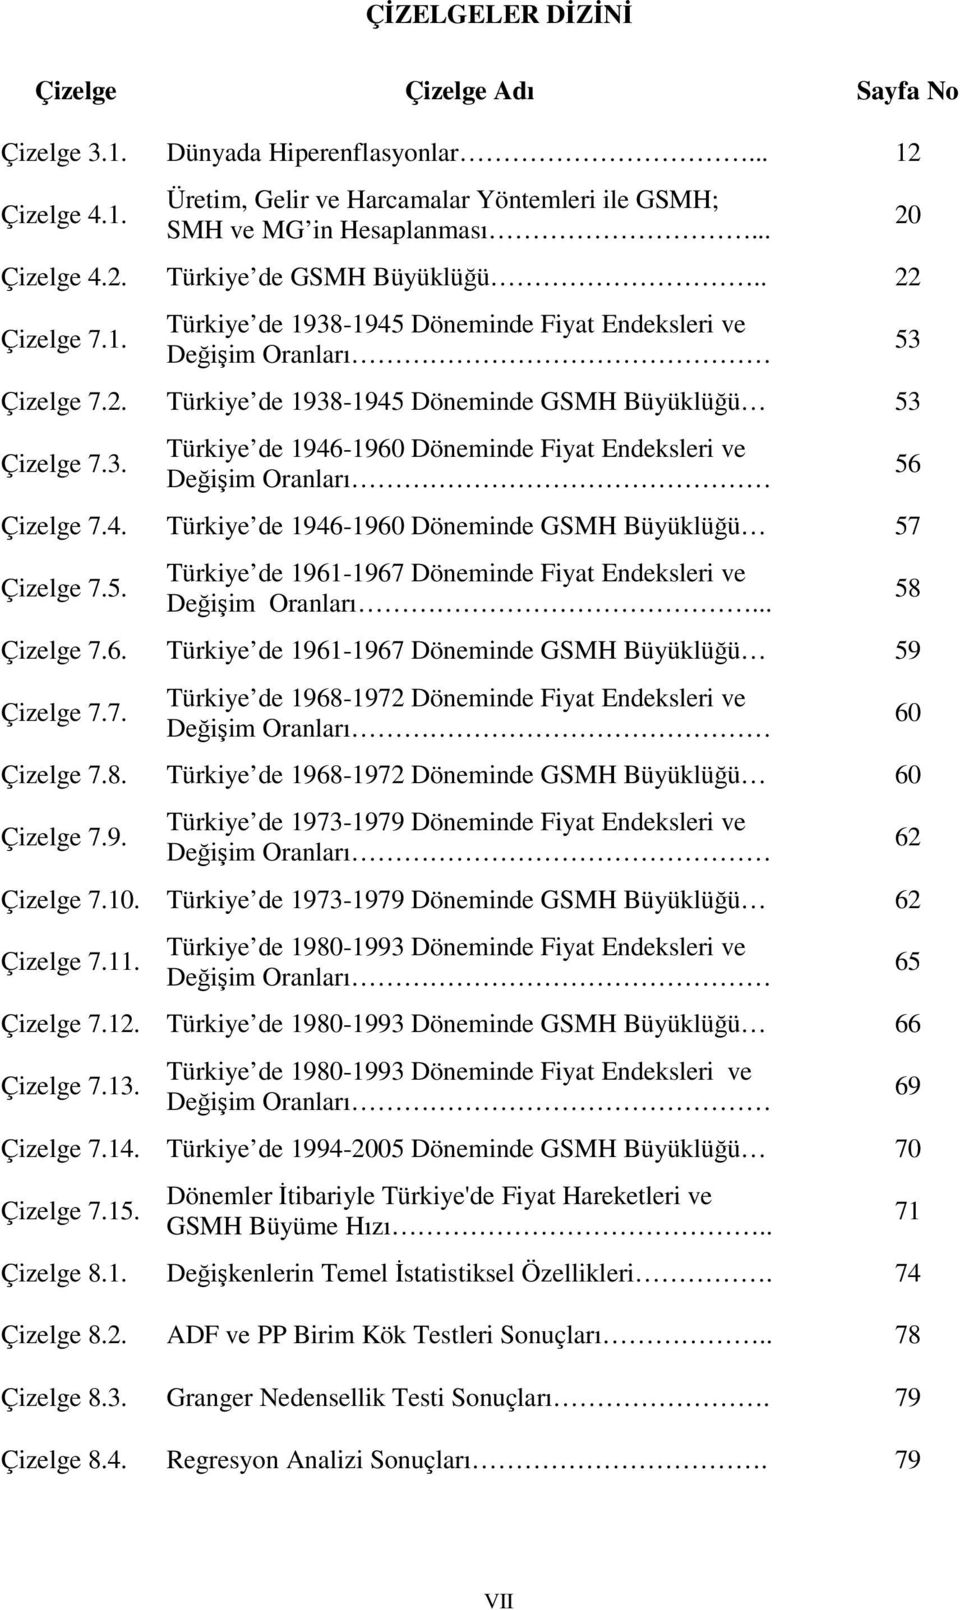 4. Türkiye de 1946-1960 Döneminde GSMH Büyüklüğü 57 Çizelge 7.5. Türkiye de 1961-1967 Döneminde Fiyat Endeksleri ve Değişim Oranları... Çizelge 7.6. Türkiye de 1961-1967 Döneminde GSMH Büyüklüğü 59 Çizelge 7.